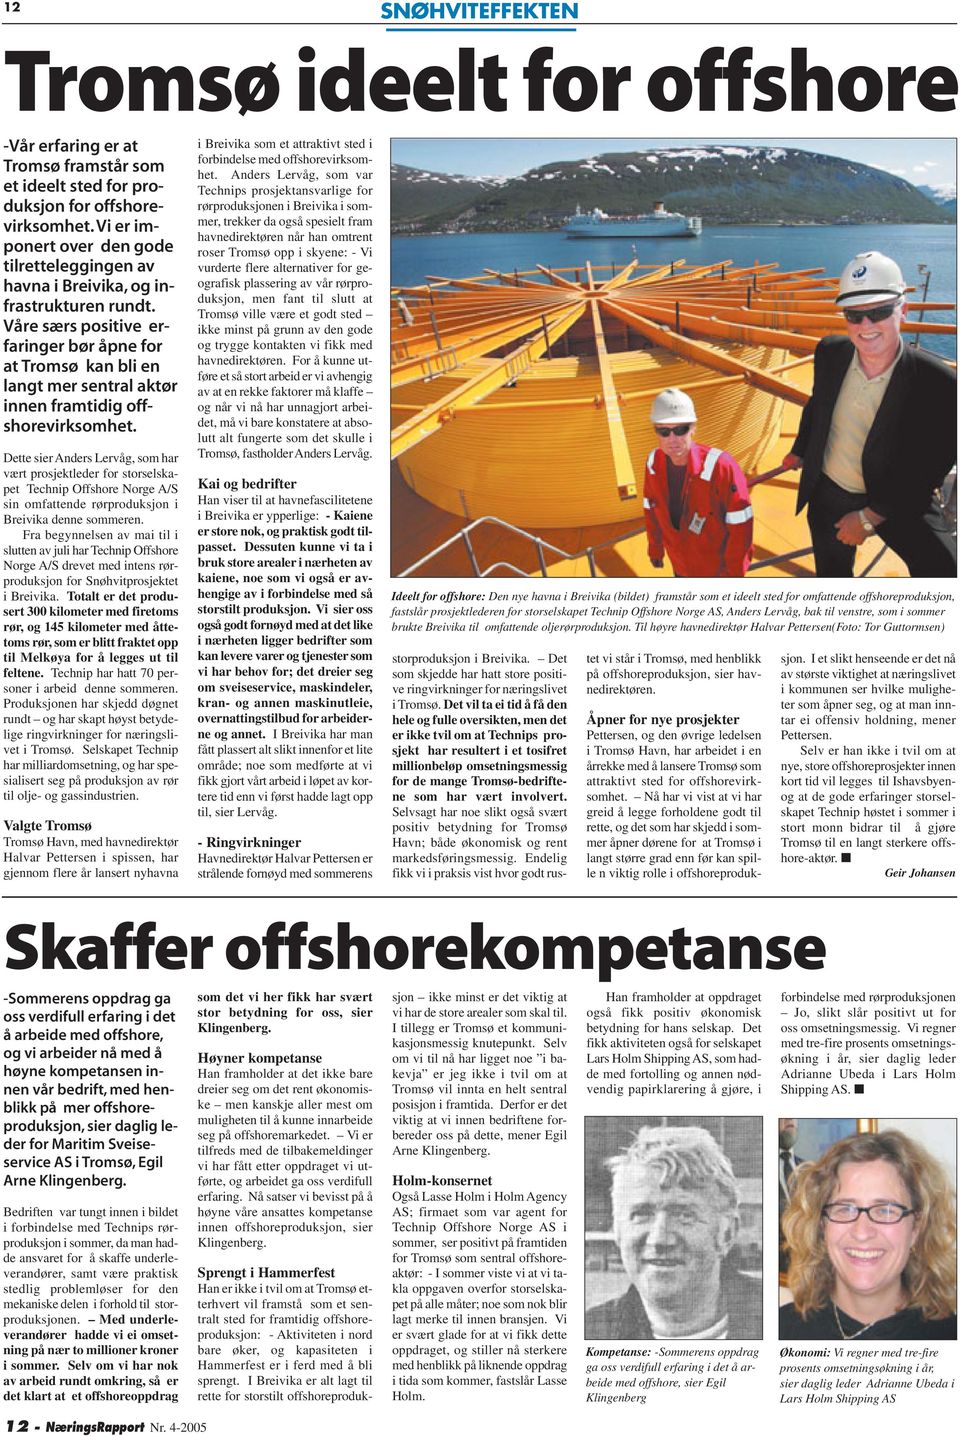 Våre særs positive erfaringer bør åpne for at Tromsø kan bli en langt mer sentral aktør innen framtidig offshorevirksomhet.